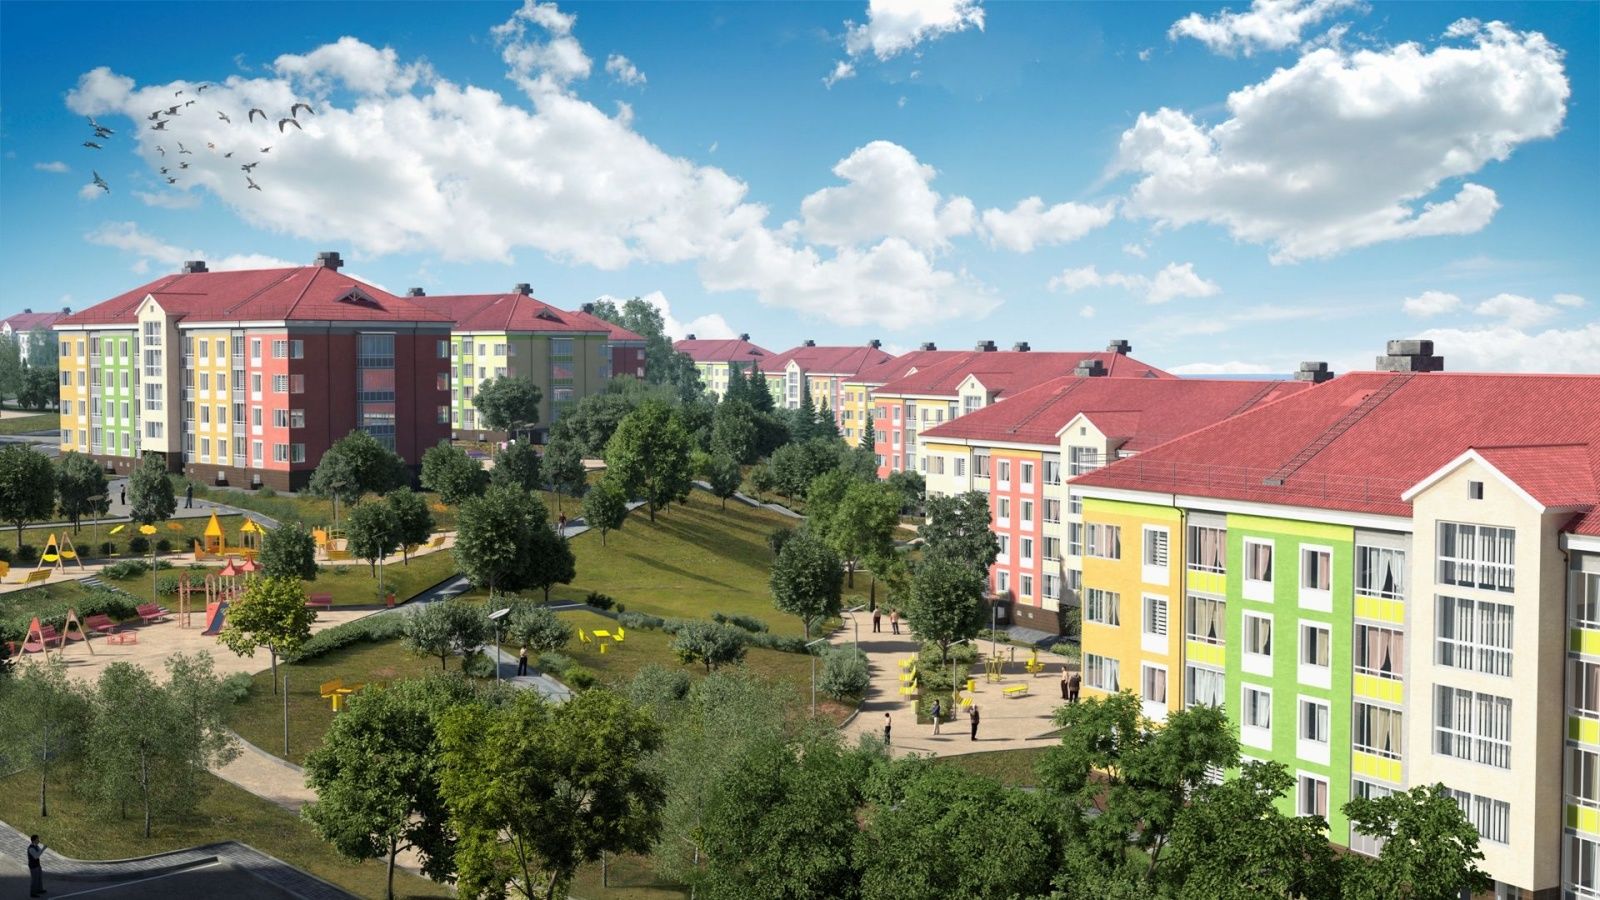  До конца 2018 года в ЖК «Новинки Smart City» могут ввести 20 тысяч квадратных метров жилья - фото 1